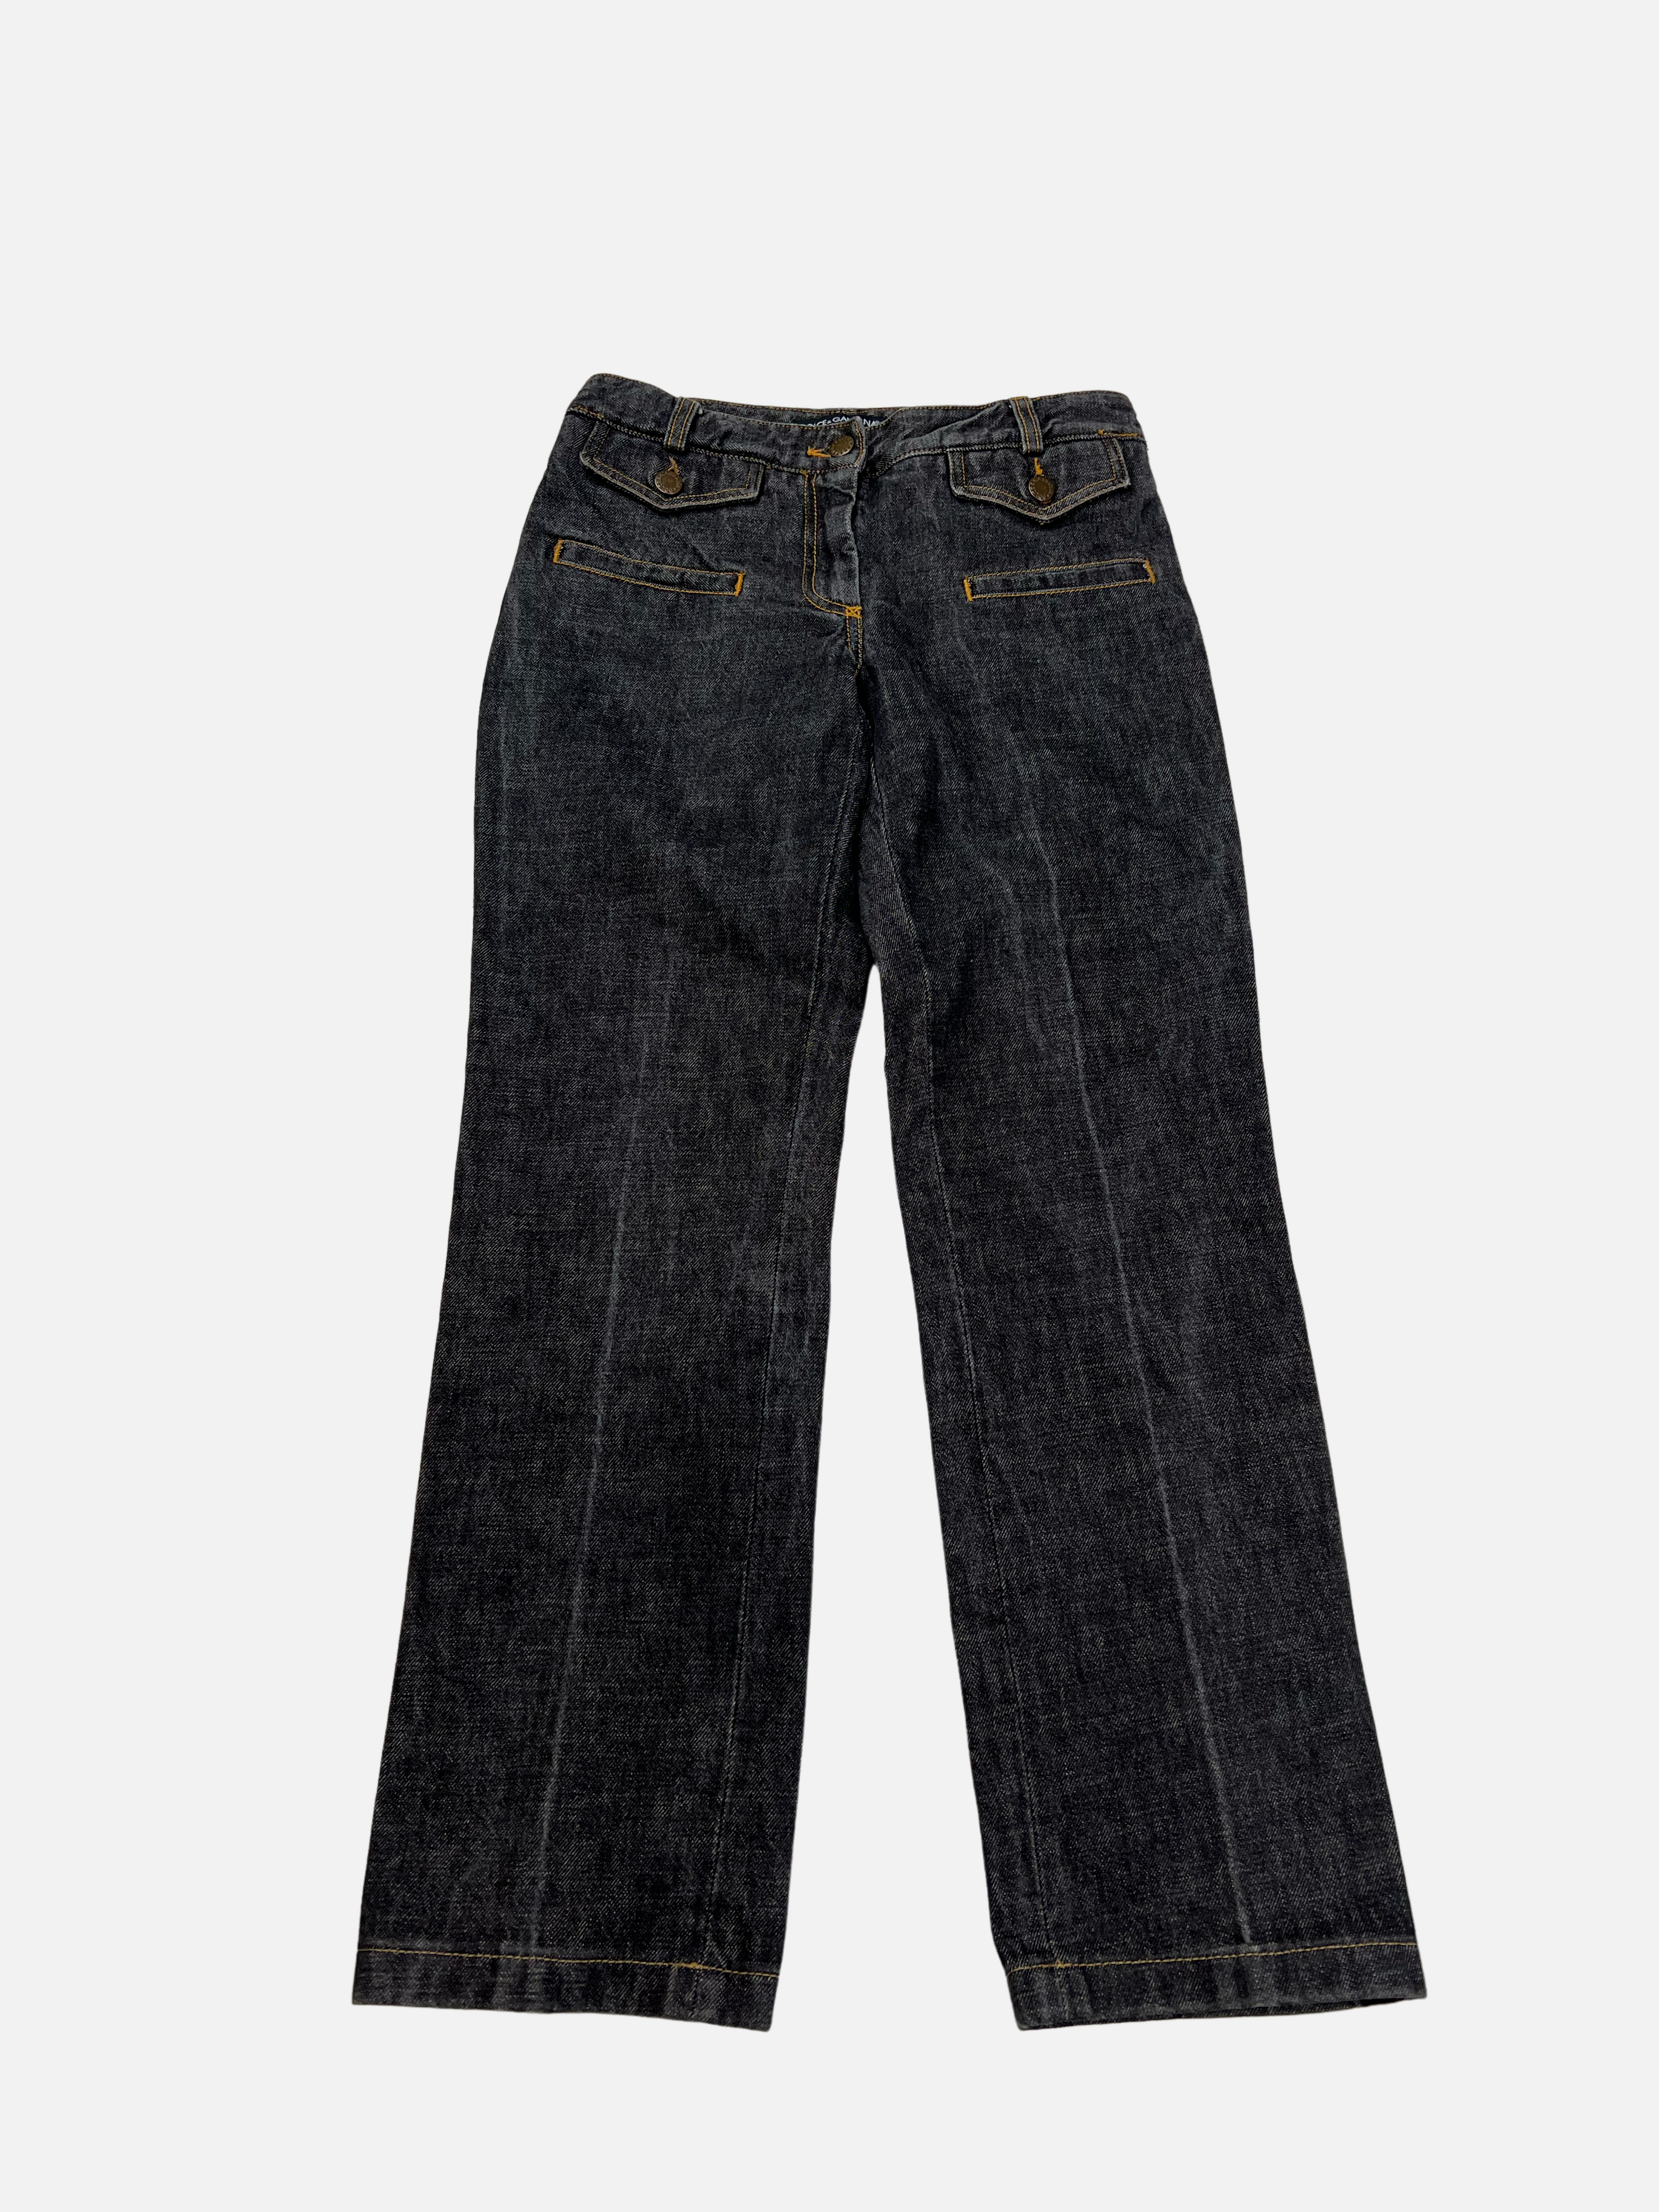 Vintage 1990s D&G Pants Straight cut (26)